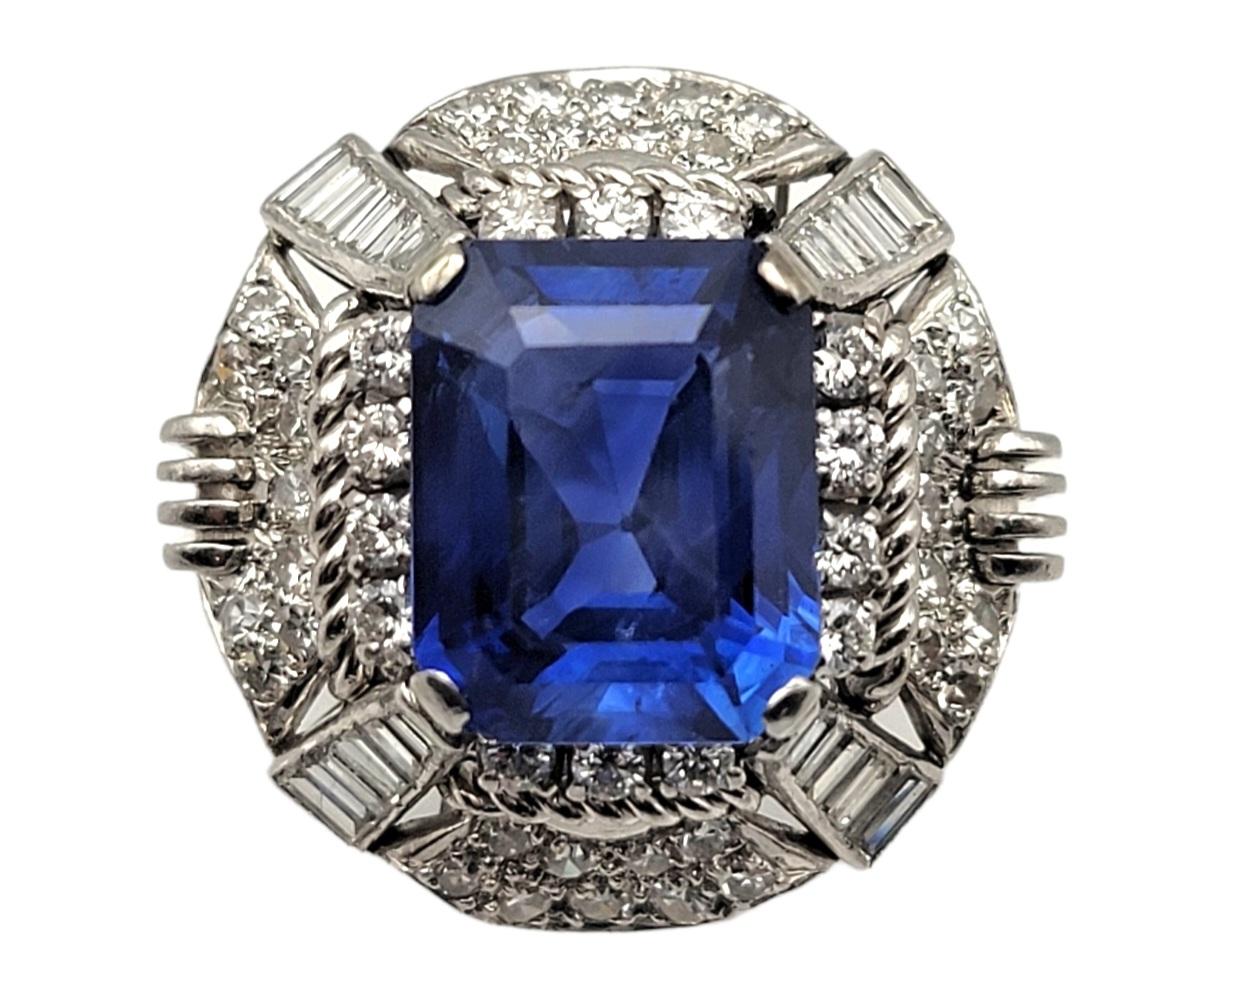 Absolut atemberaubender, seltener Vintage-Cocktailring mit Saphiren und Diamanten im Smaragdschliff. Der leuchtend blaue Stein im Kontrast zu den strahlend weißen Diamanten fällt dem Betrachter besonders ins Auge. Die exquisite Detailarbeit in